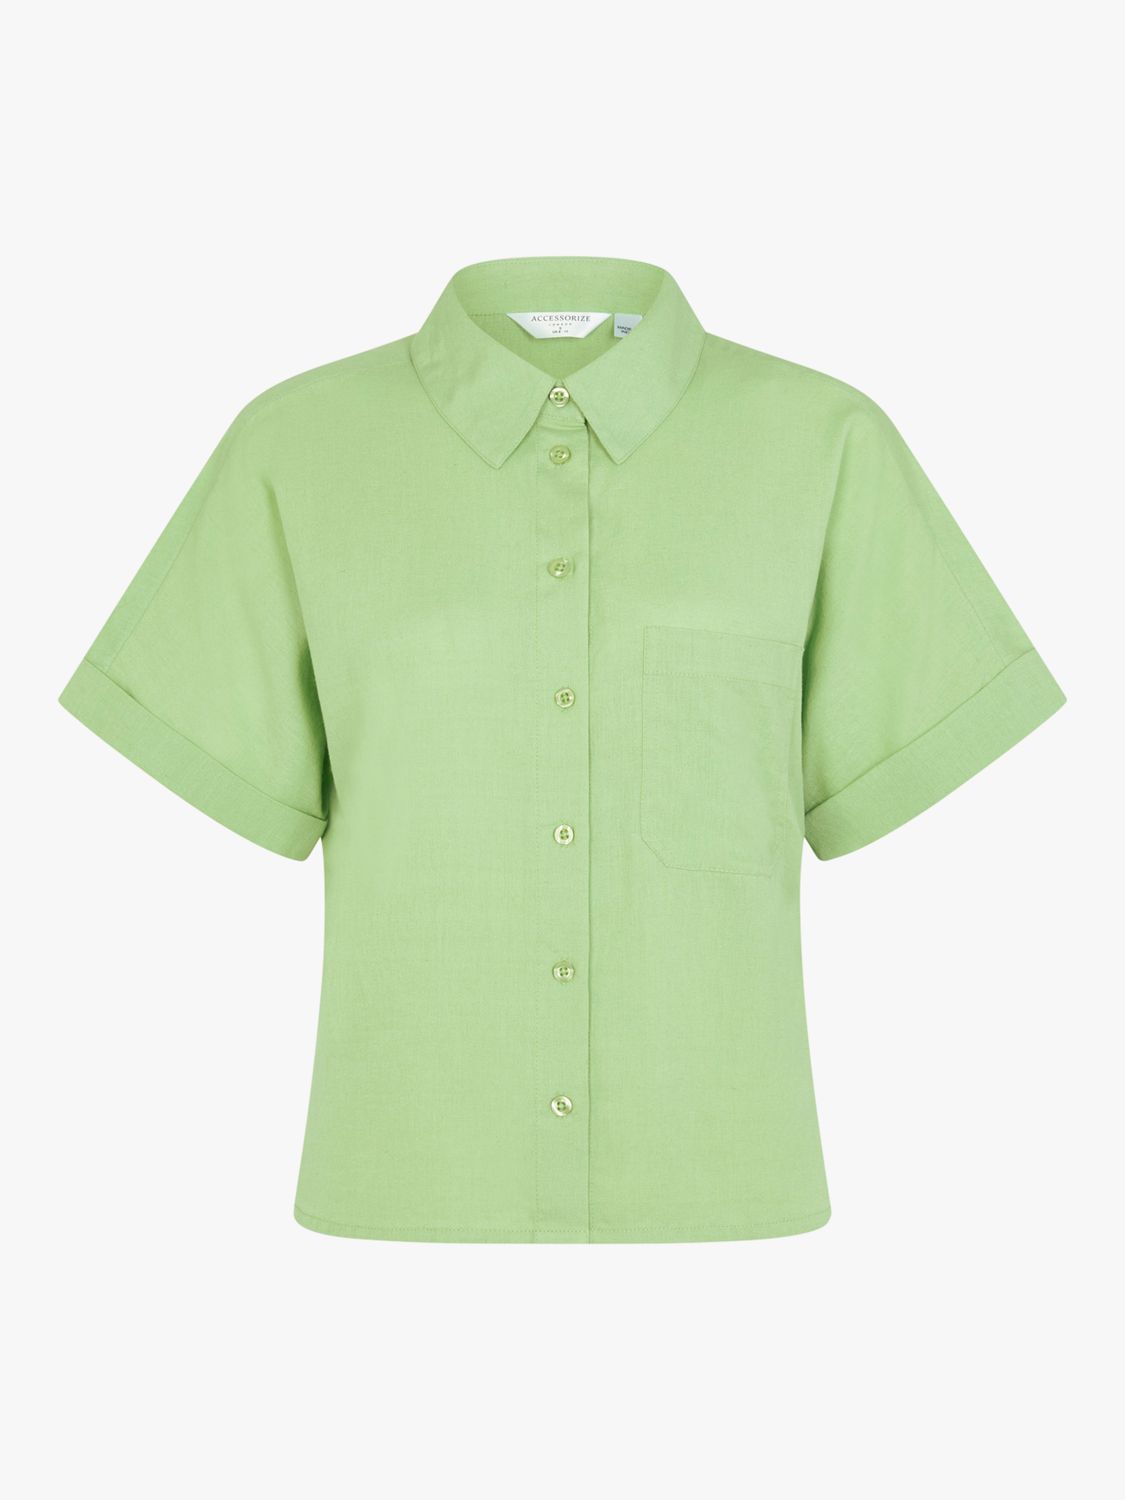 Buy Accessorize Beach Short Sleeve Shirt, Green Online at johnlewis.com